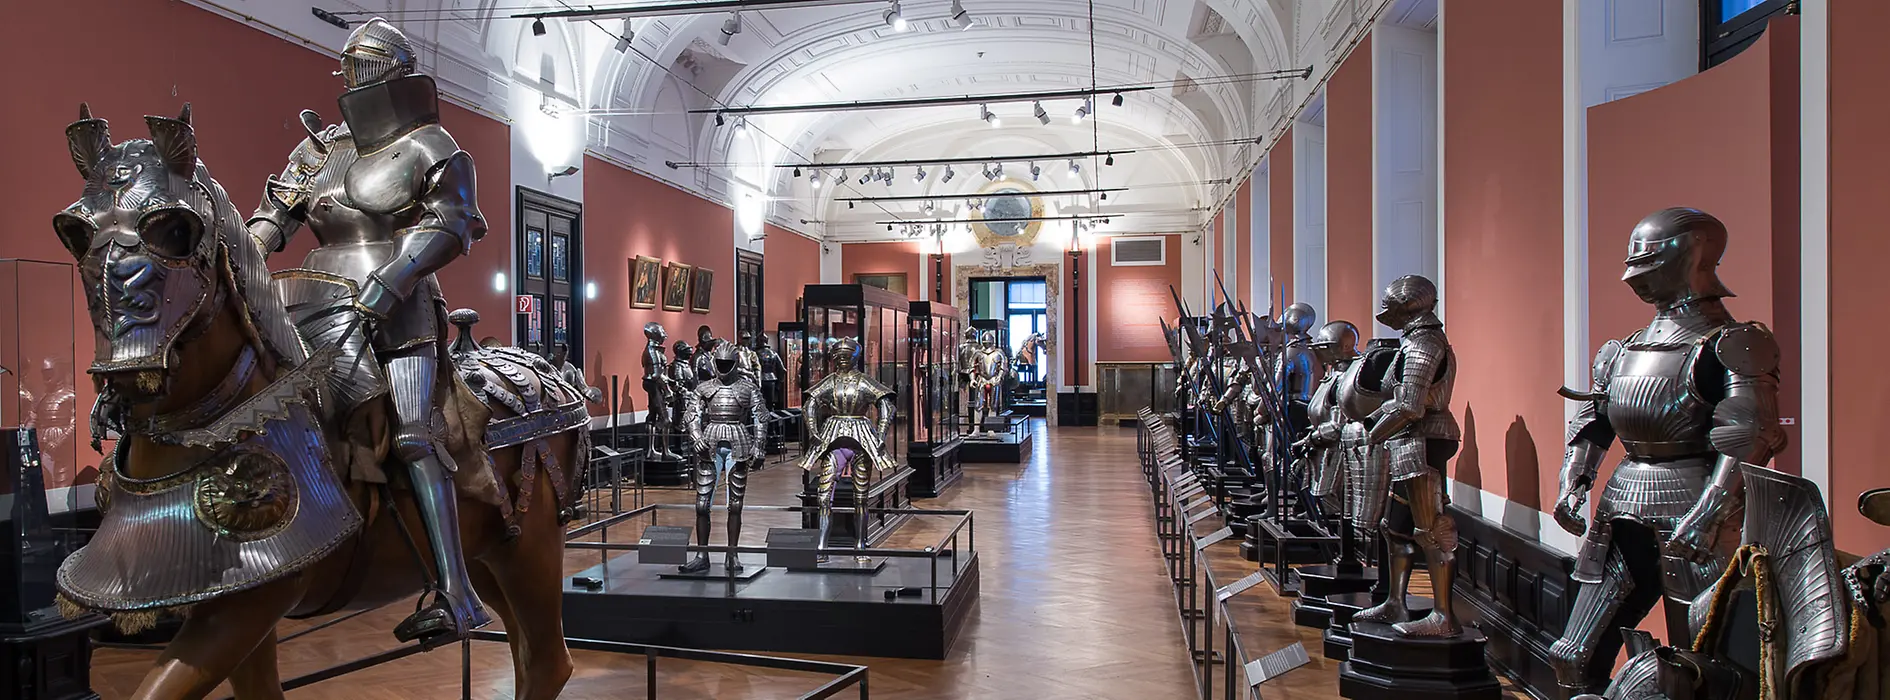 Музей королевской охоты и оружия